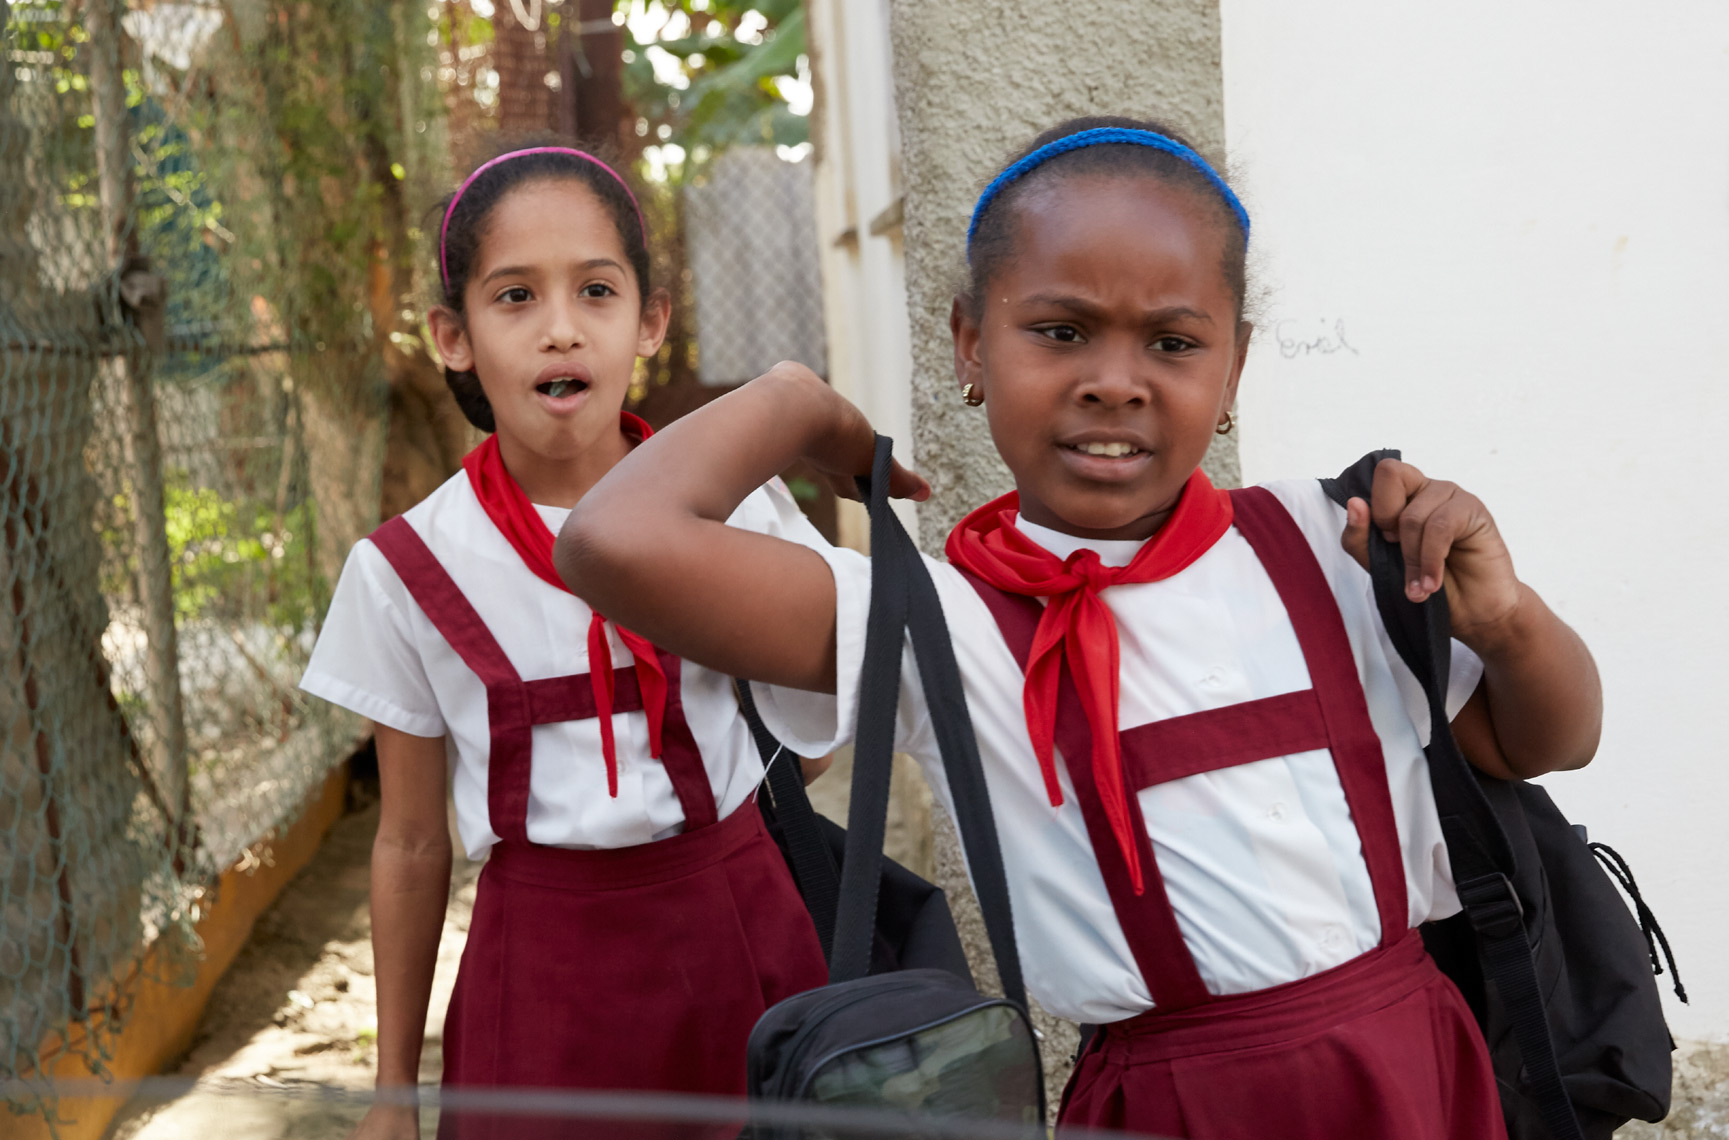 2 young girls in uniforms in Cuba walking to school